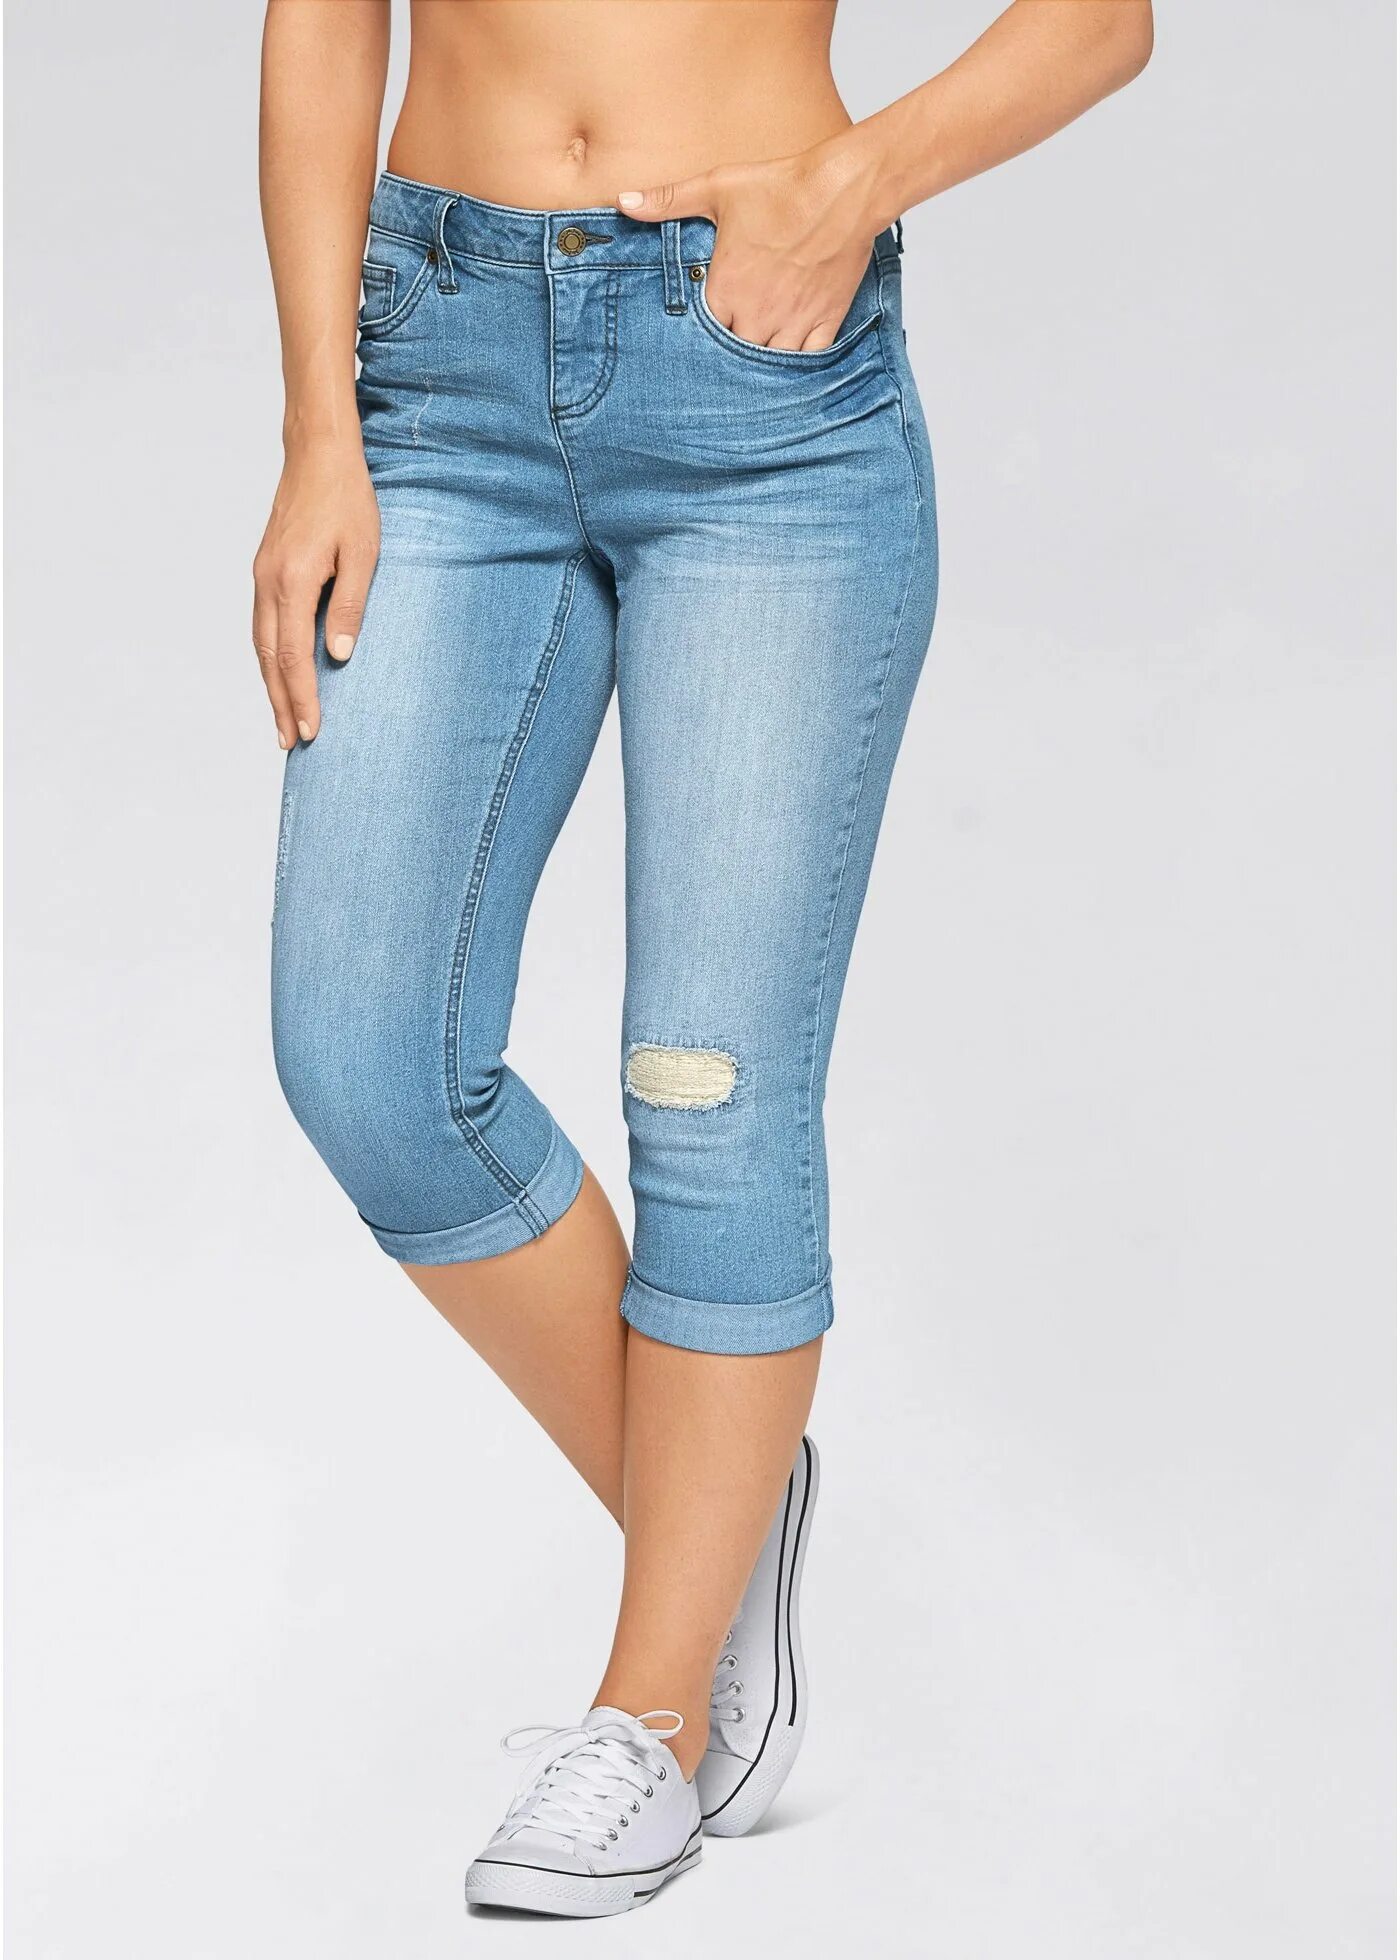 Джинсовые капри женские на валберис. DKNY Jeans капри джинсовые. Валберис джинсы капри. Бриджи капри джинсовые Hollister. Купить бриджи джинсовые женские